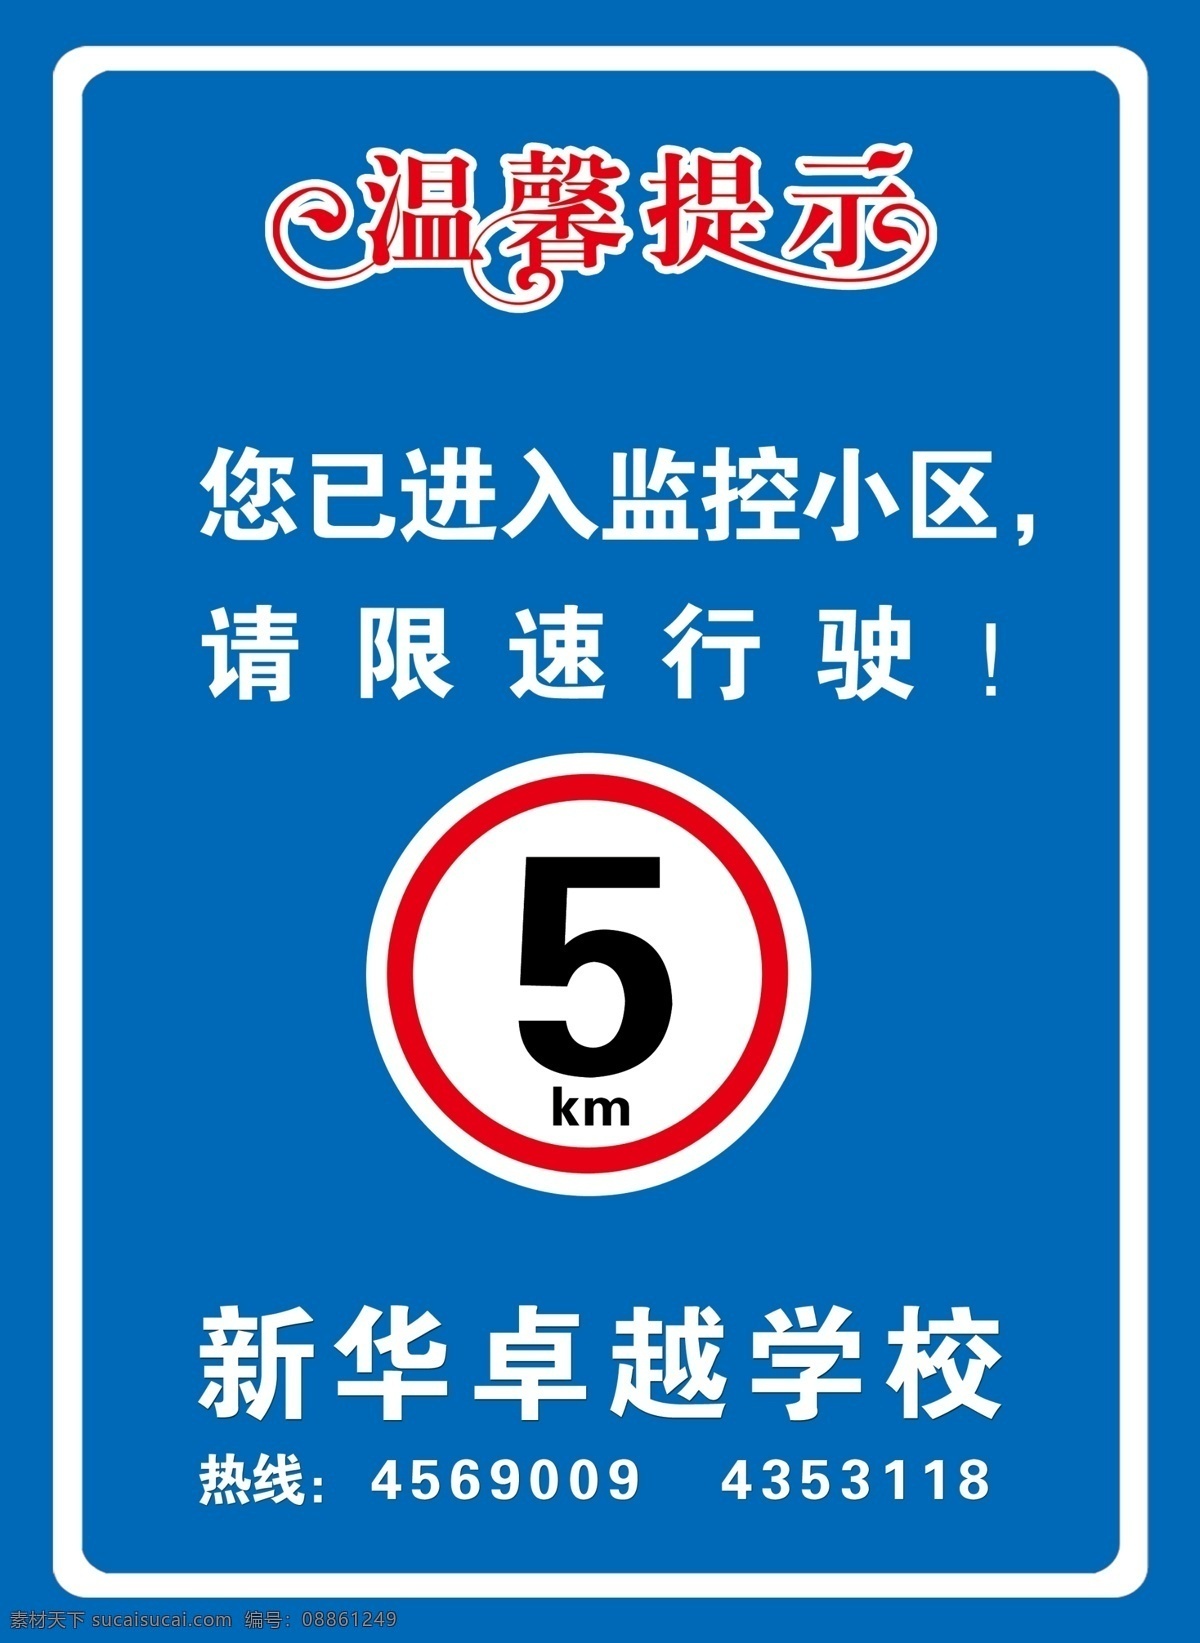 限速行驶 温馨提示 限速 5km 蓝色 进入小区 温馨提示牌 分层